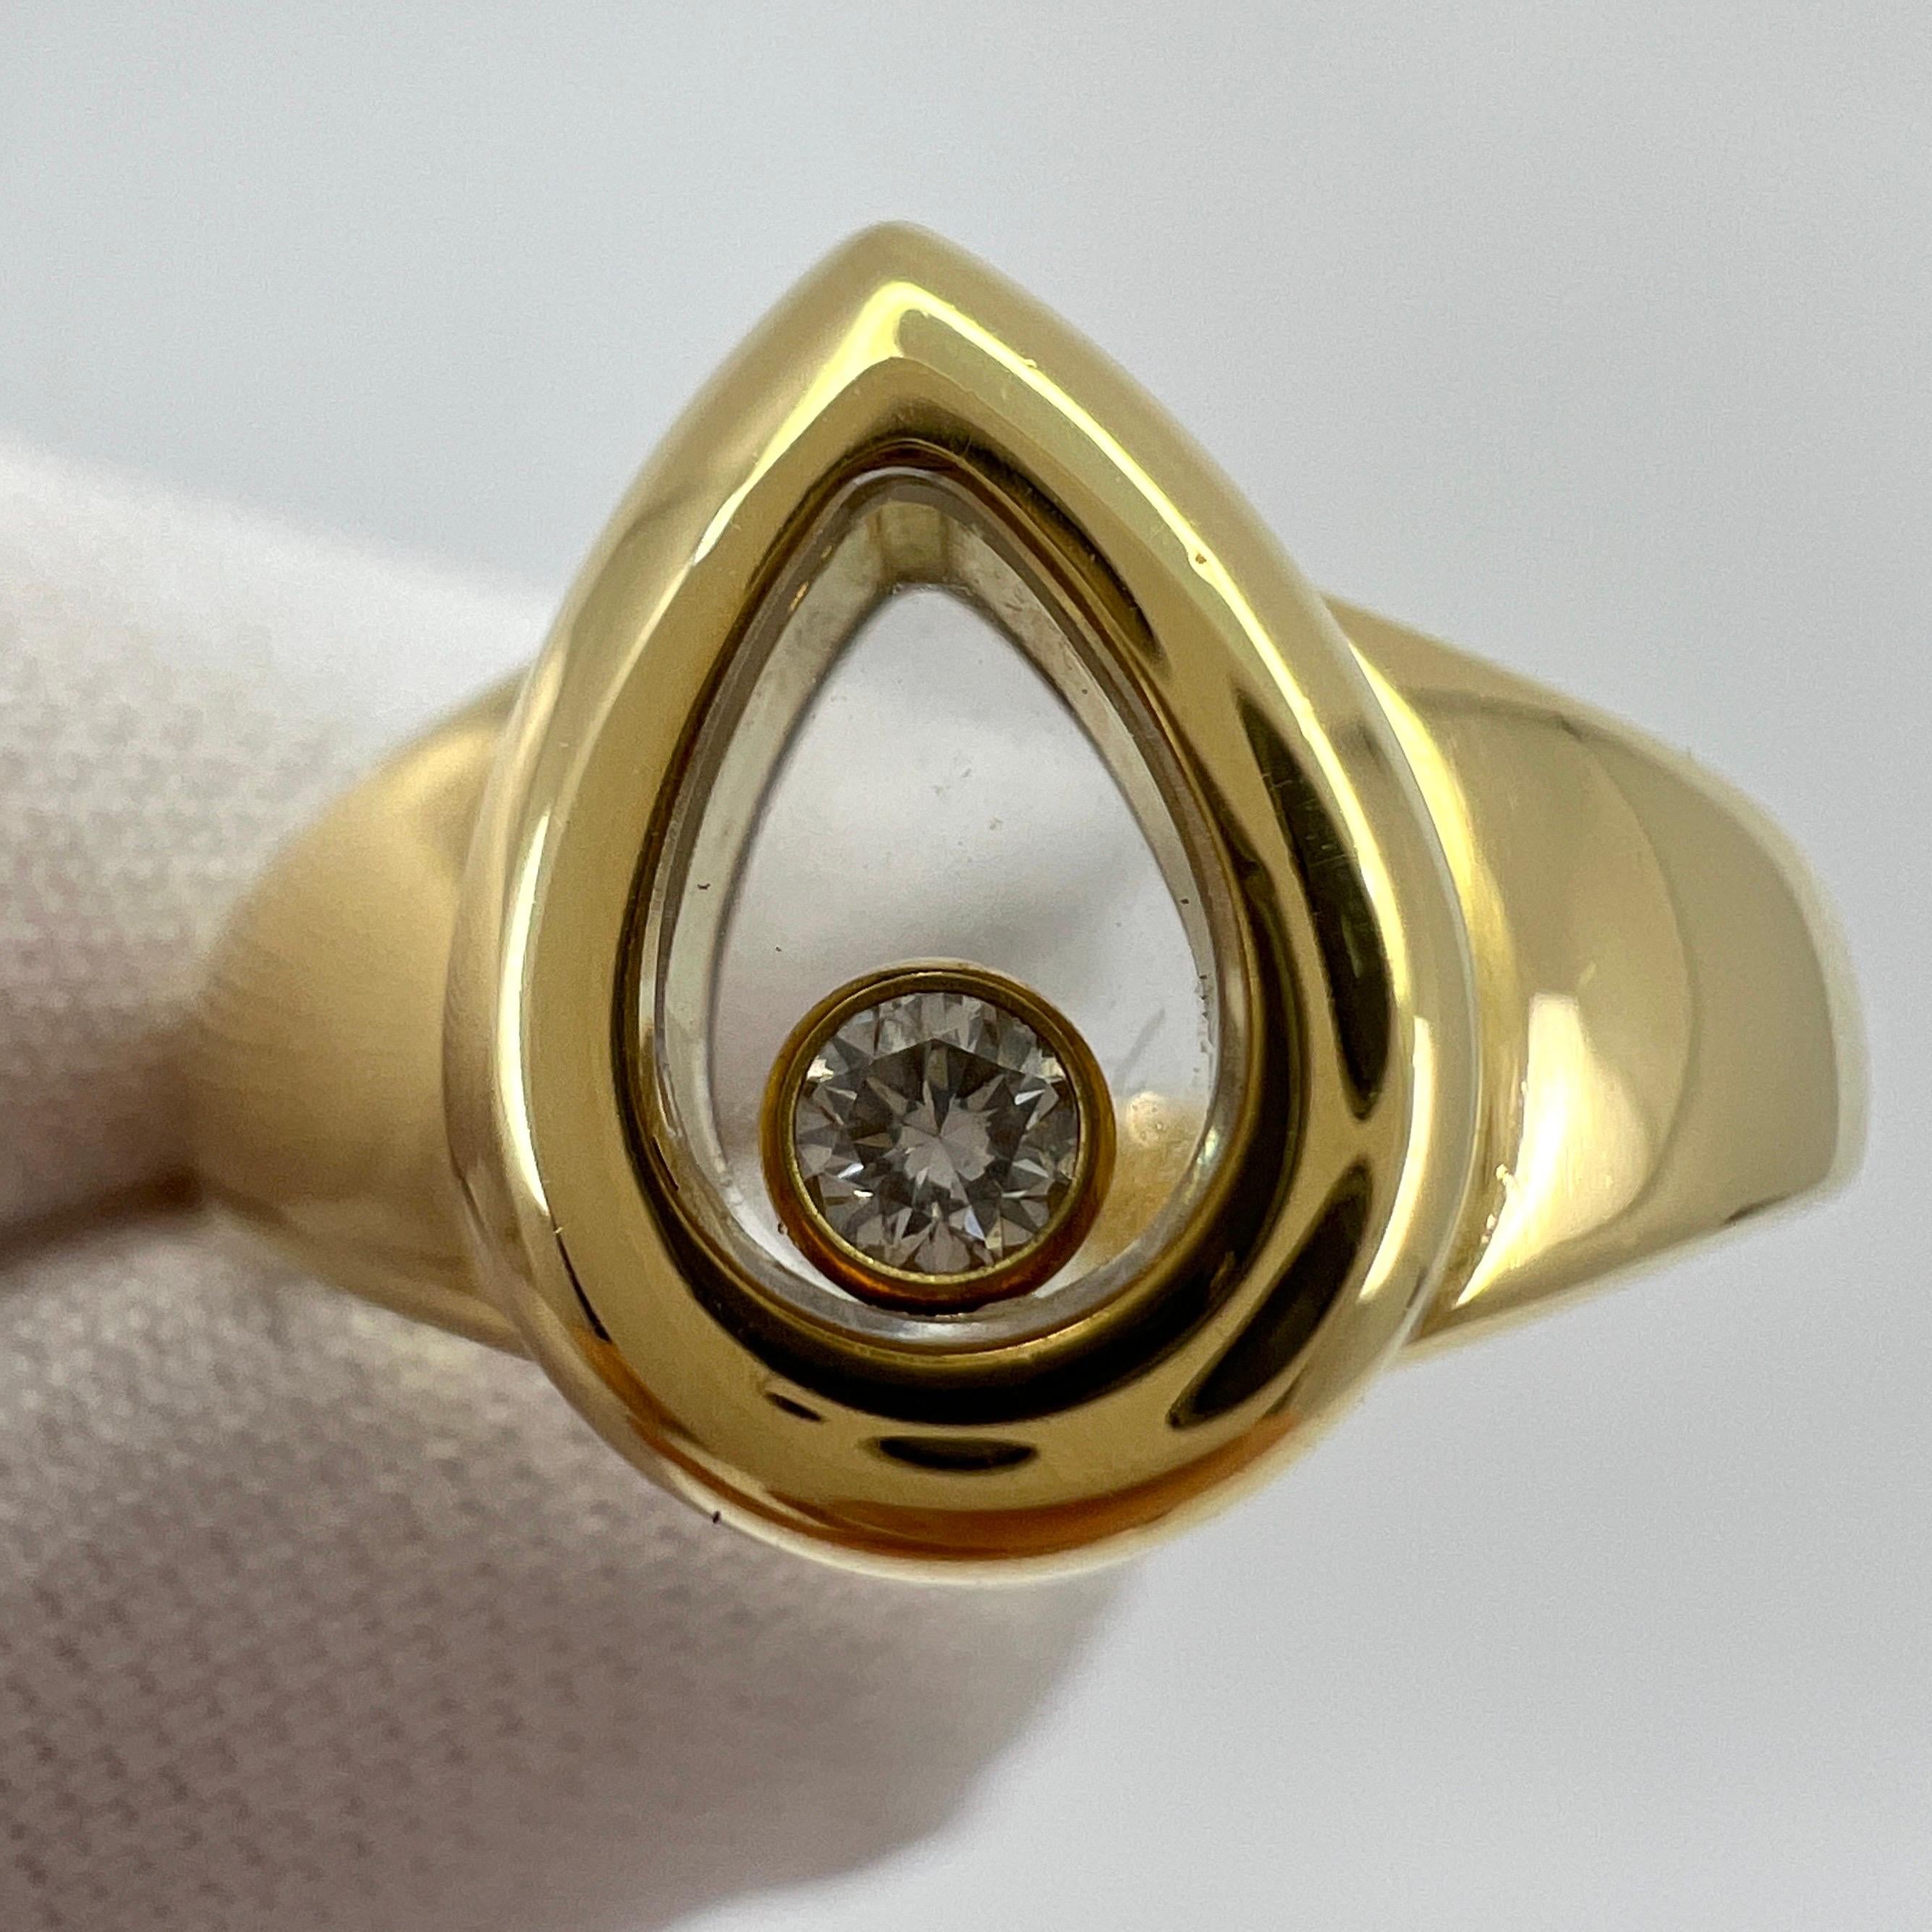 Rare Vintage Chopard Happy Diamonds Pear Shape 18k Yellow Gold Ring. 

Inspirée par les gouttes d'eau, la collection Happy Diamonds de Chopard présente des diamants libres de tourbillonner gracieusement derrière un verre en cristal de saphir,